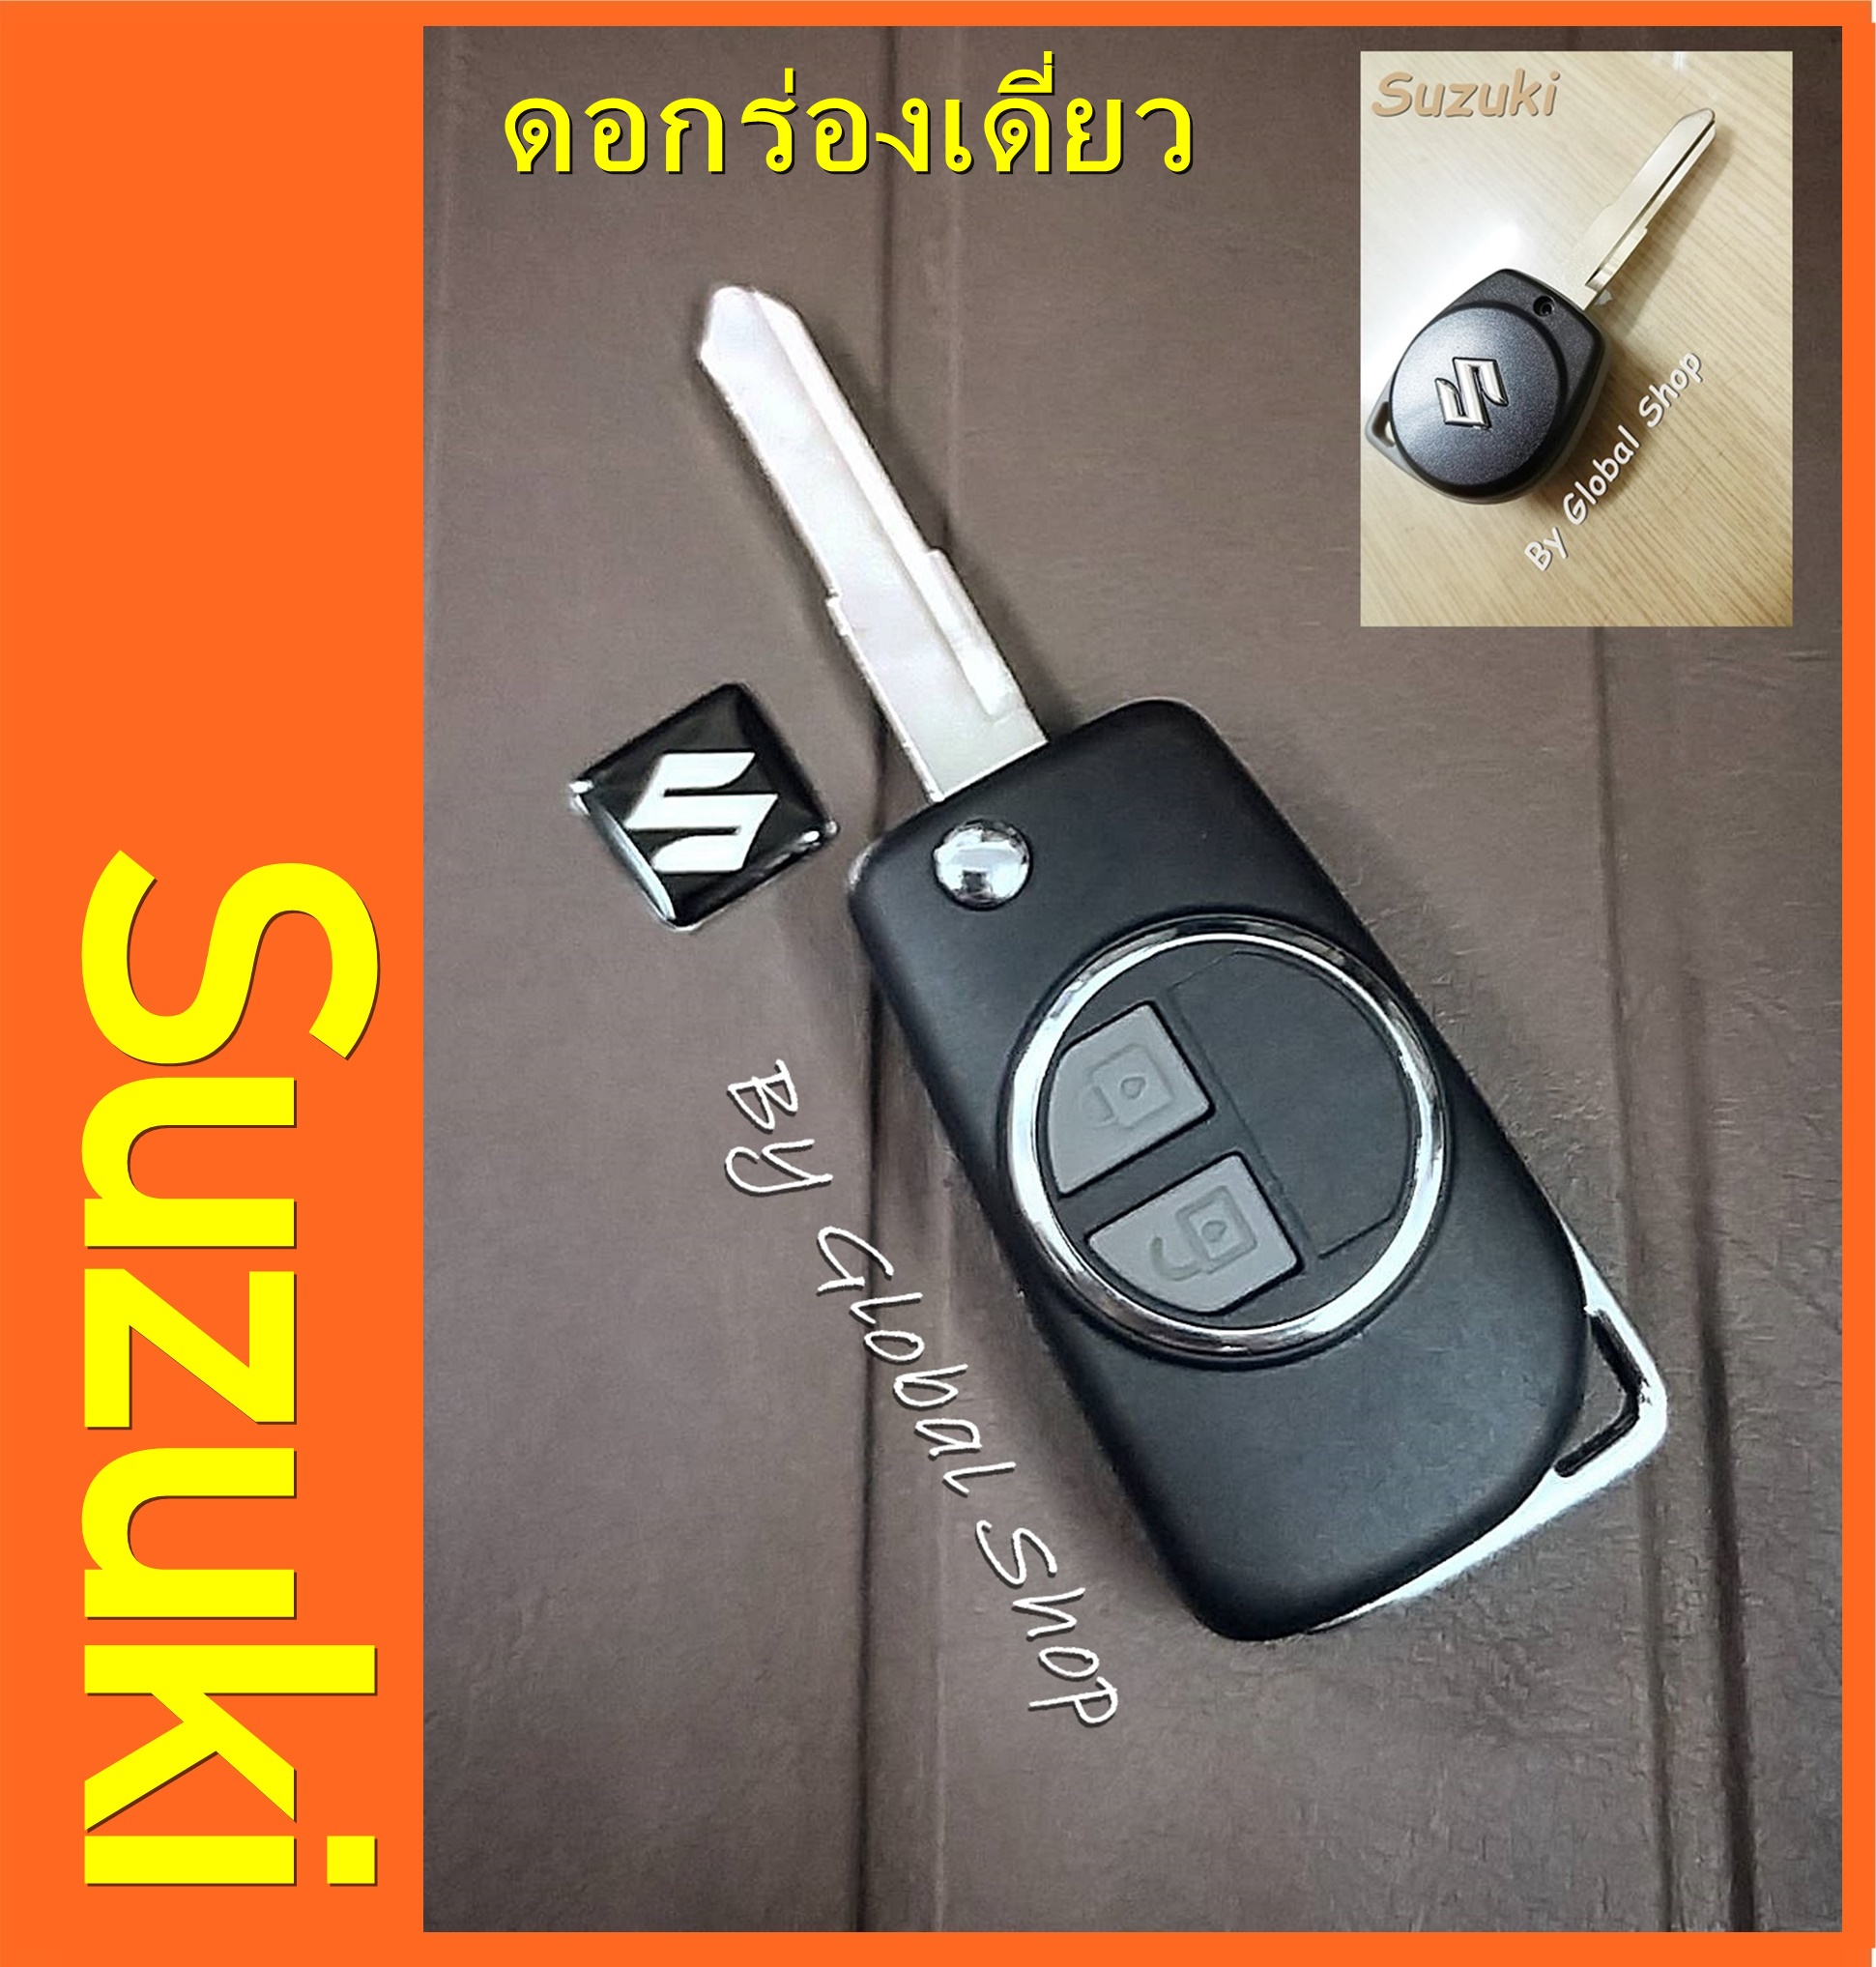 กรอบกุญแจพับ Suzuki Ciaz / Cellerio / Swft พร้อมโลโก้ เล็กกระทัดรัด ไม่รวมปุ่มกด